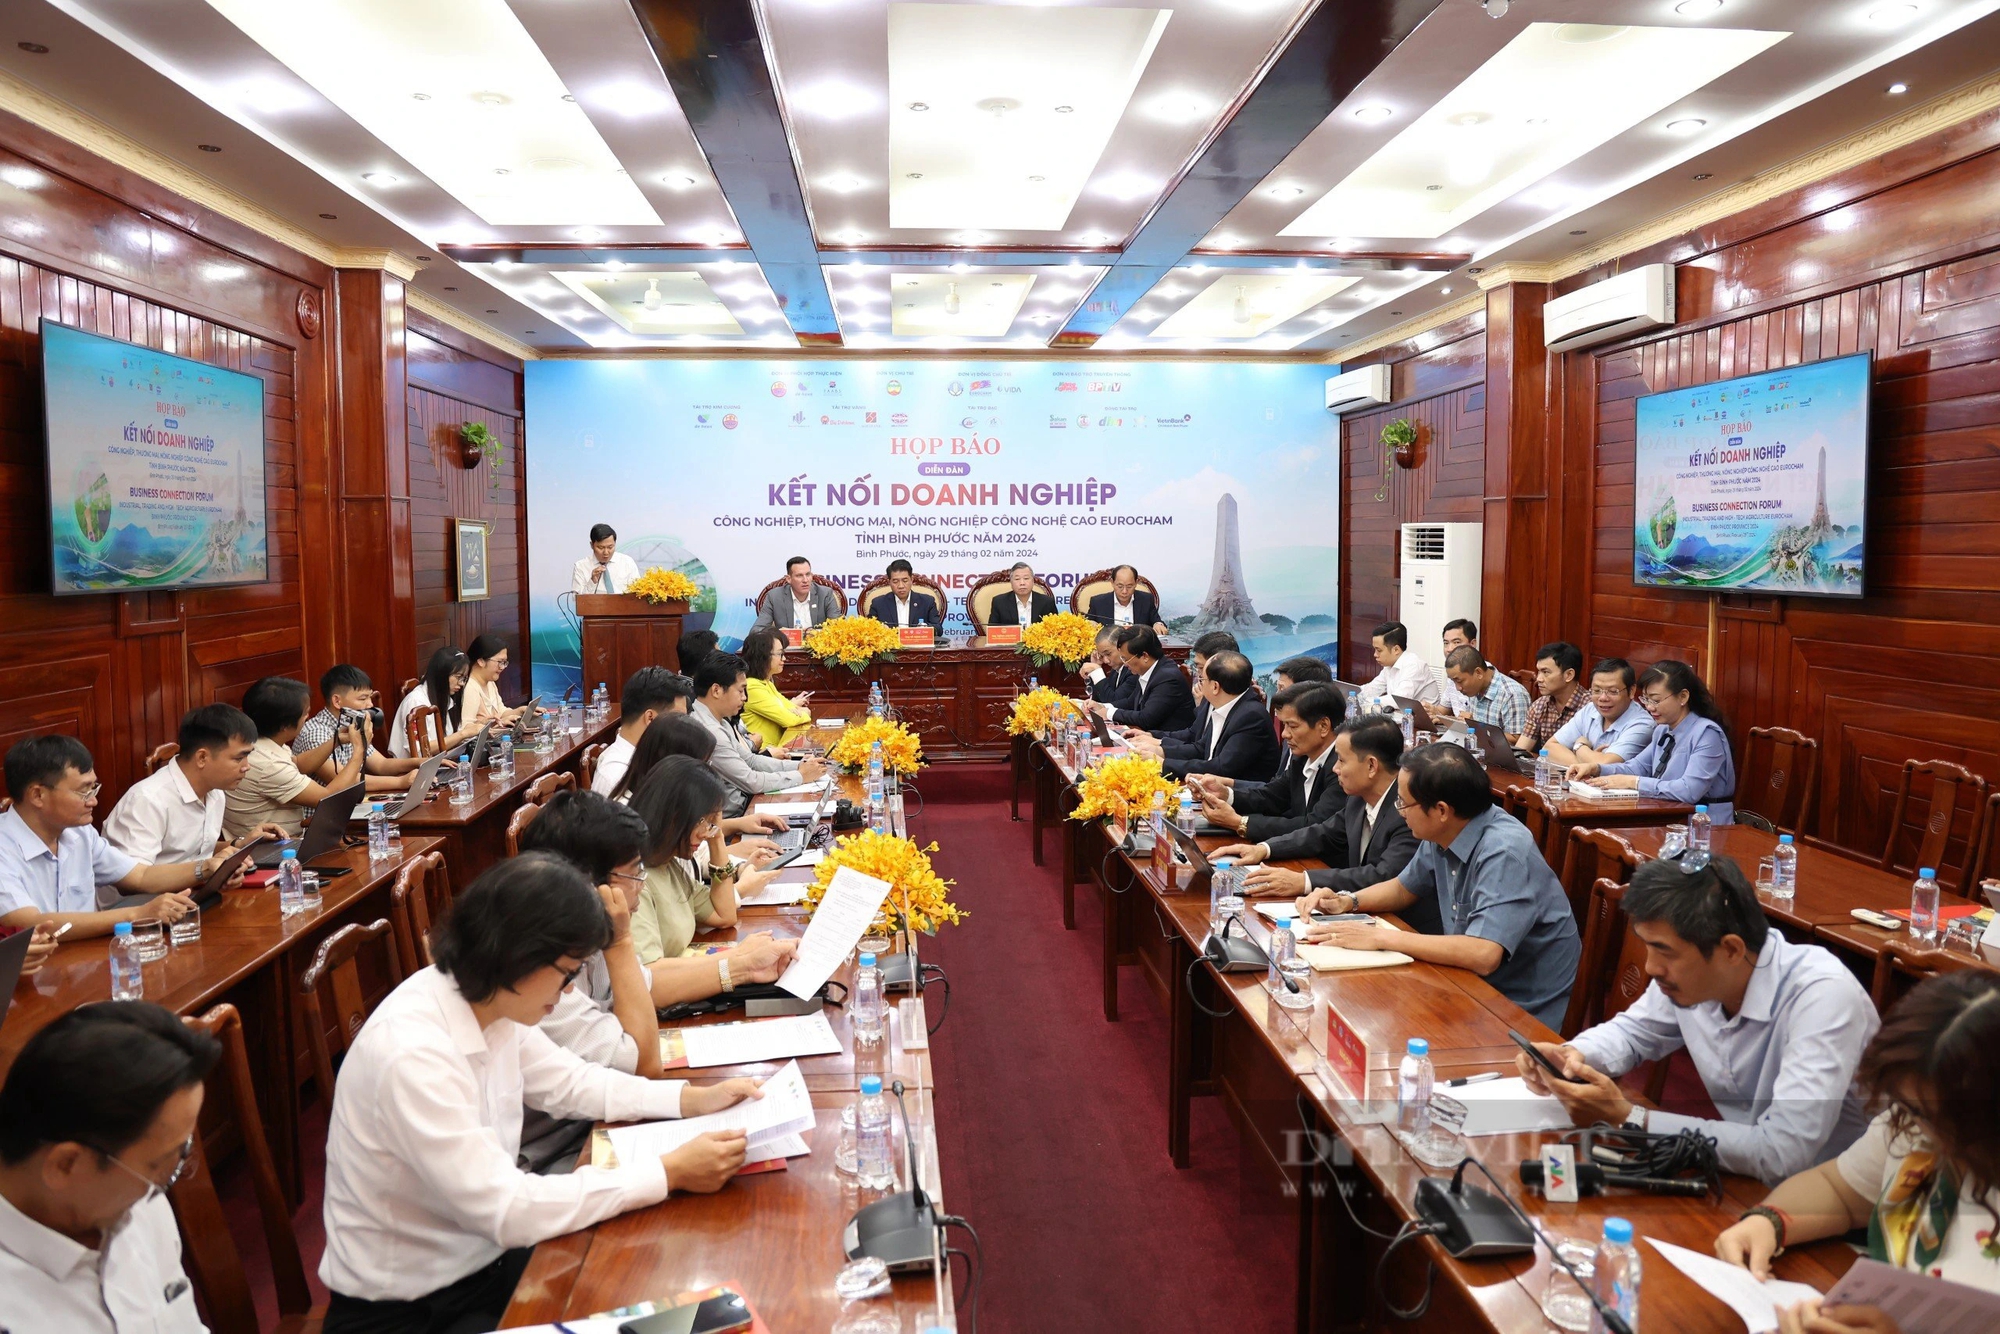 Diễn đàn kết nối doanh nghiệp: Cơ hội để tỉnh Bình Phước quảng bá chính sách ưu đãi đầu tư- Ảnh 1.